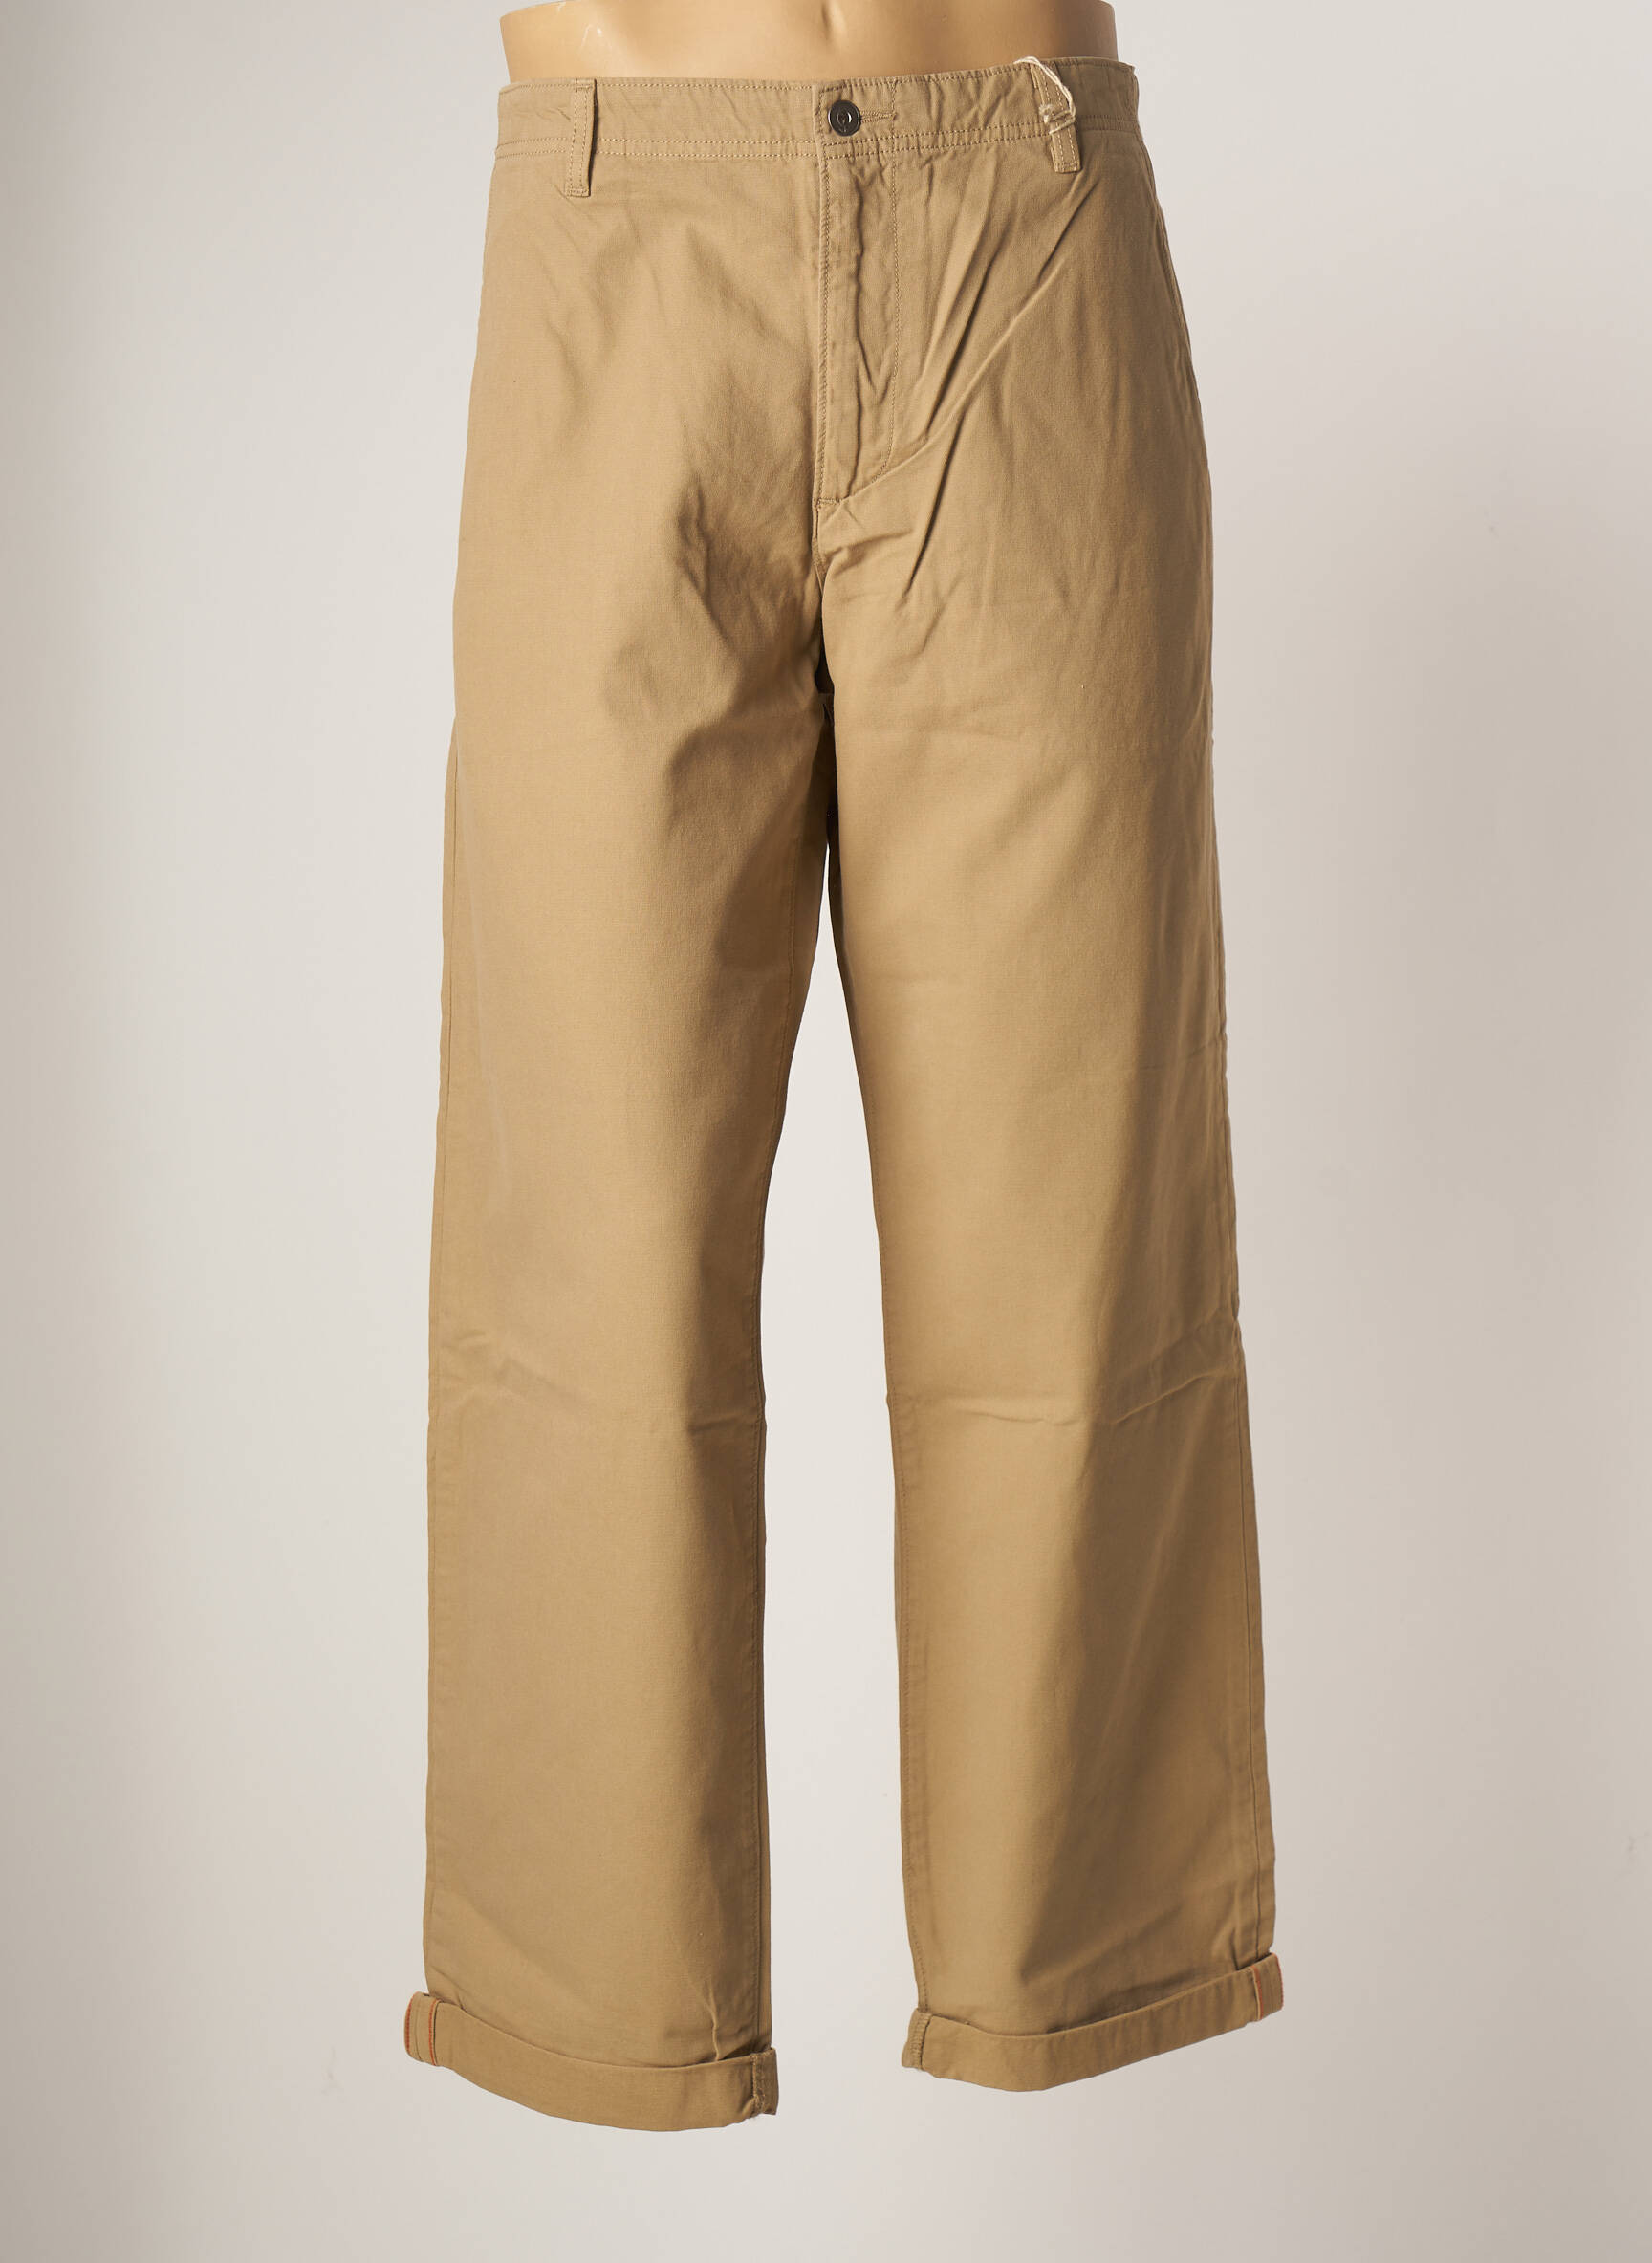 Dockers Pantalons Larges Homme De Couleur Beige 2001185-beige0 - Modz